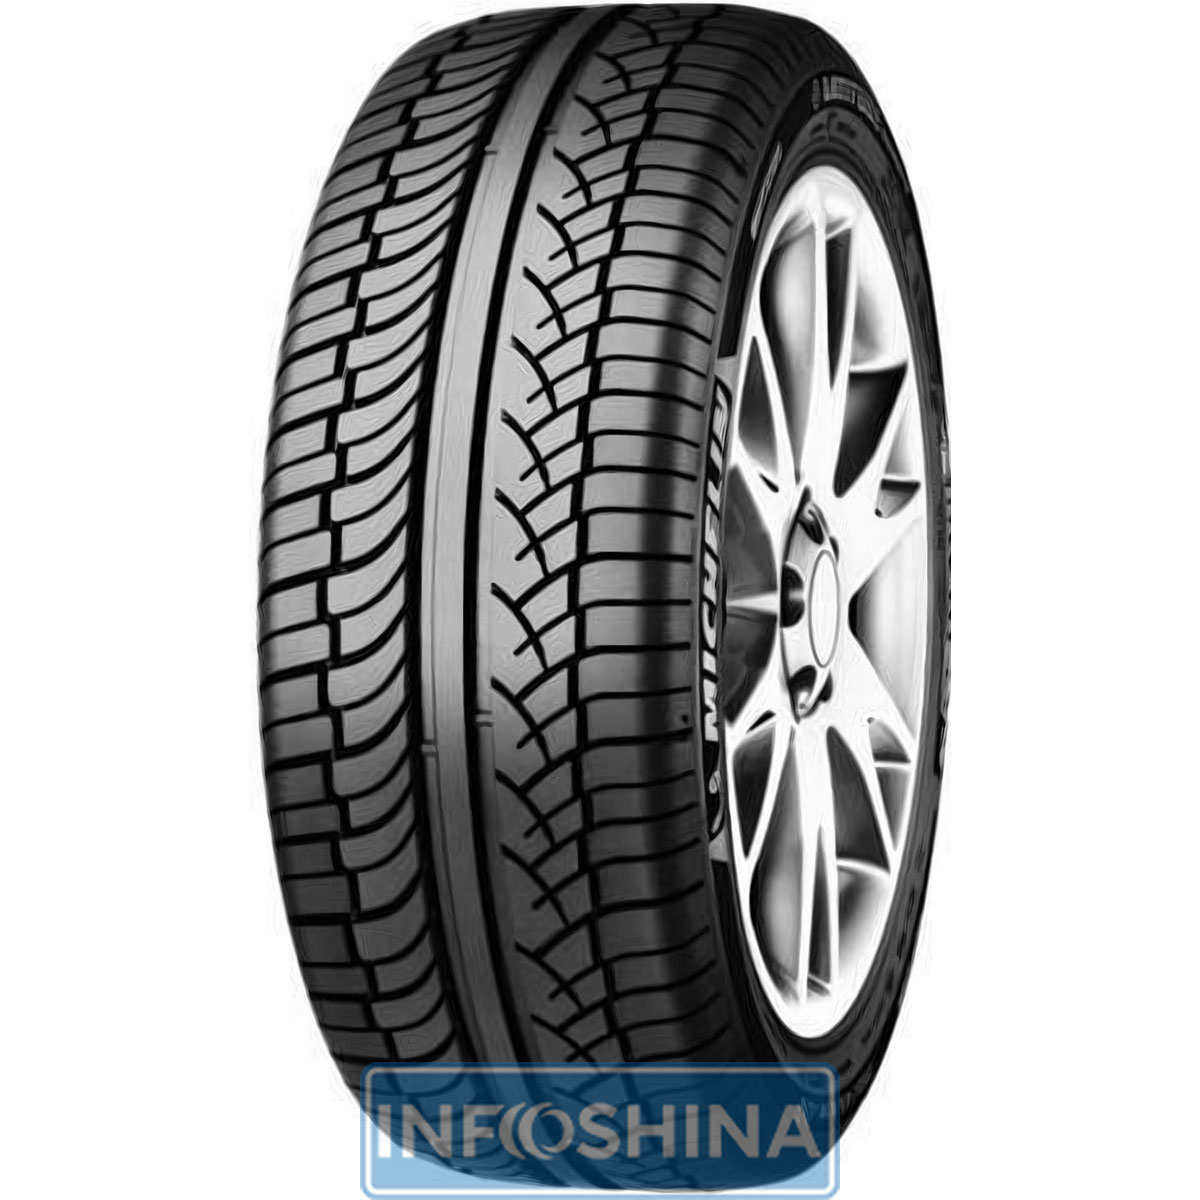 Купить шины Michelin Latitude Diamaris 235/55 R17 99H